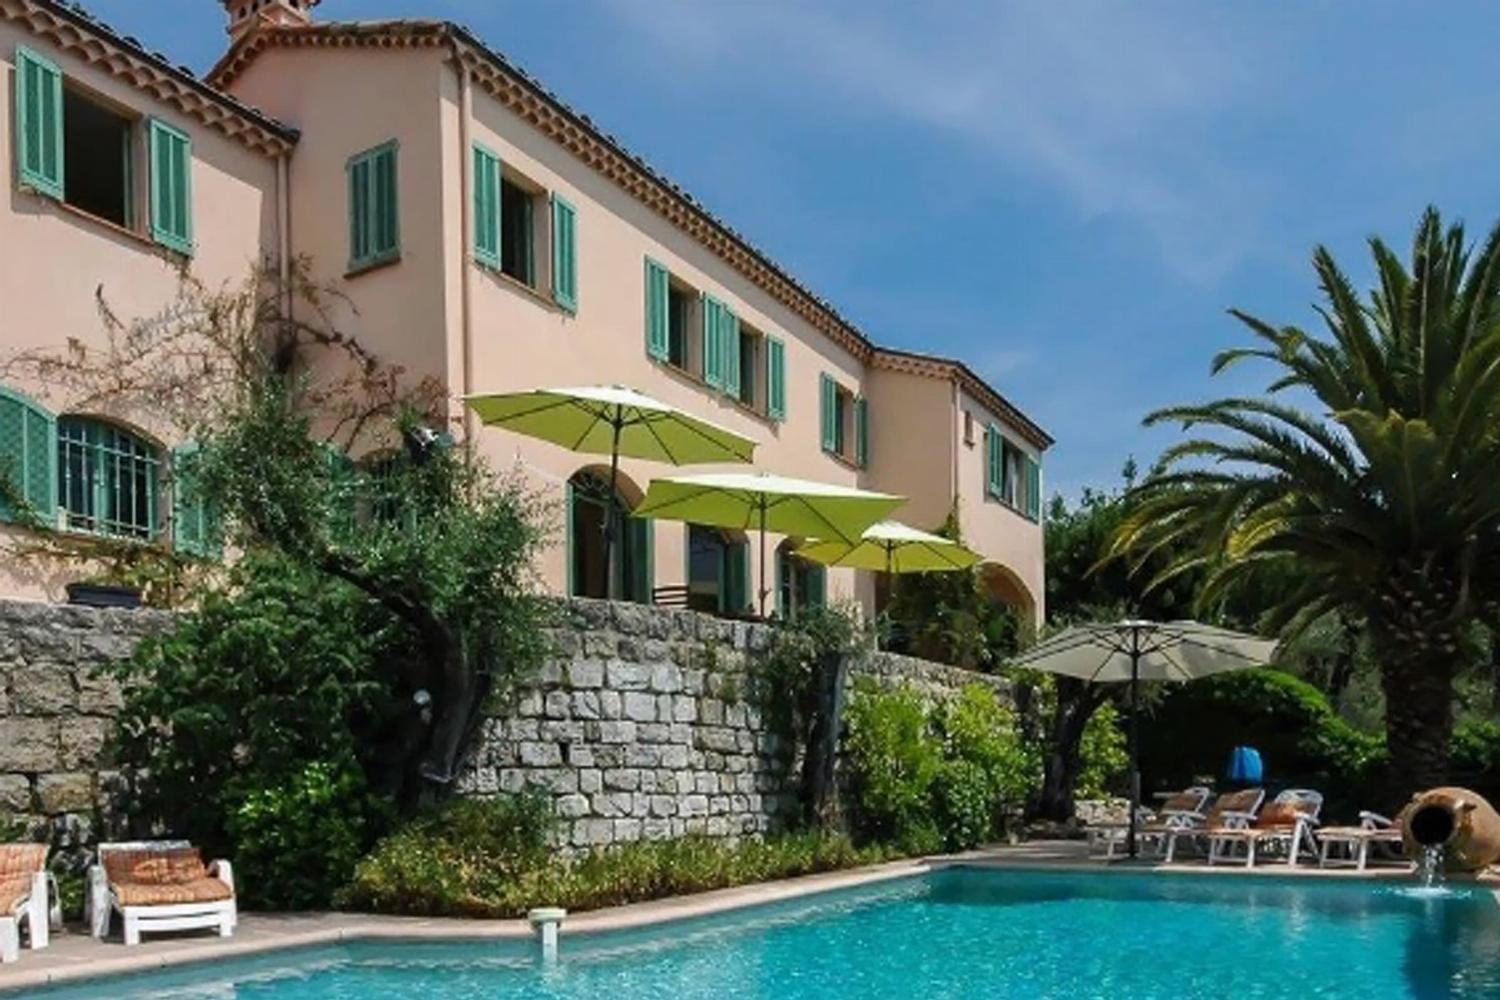 Maison de vacances en Provence avec piscine privée à débordement